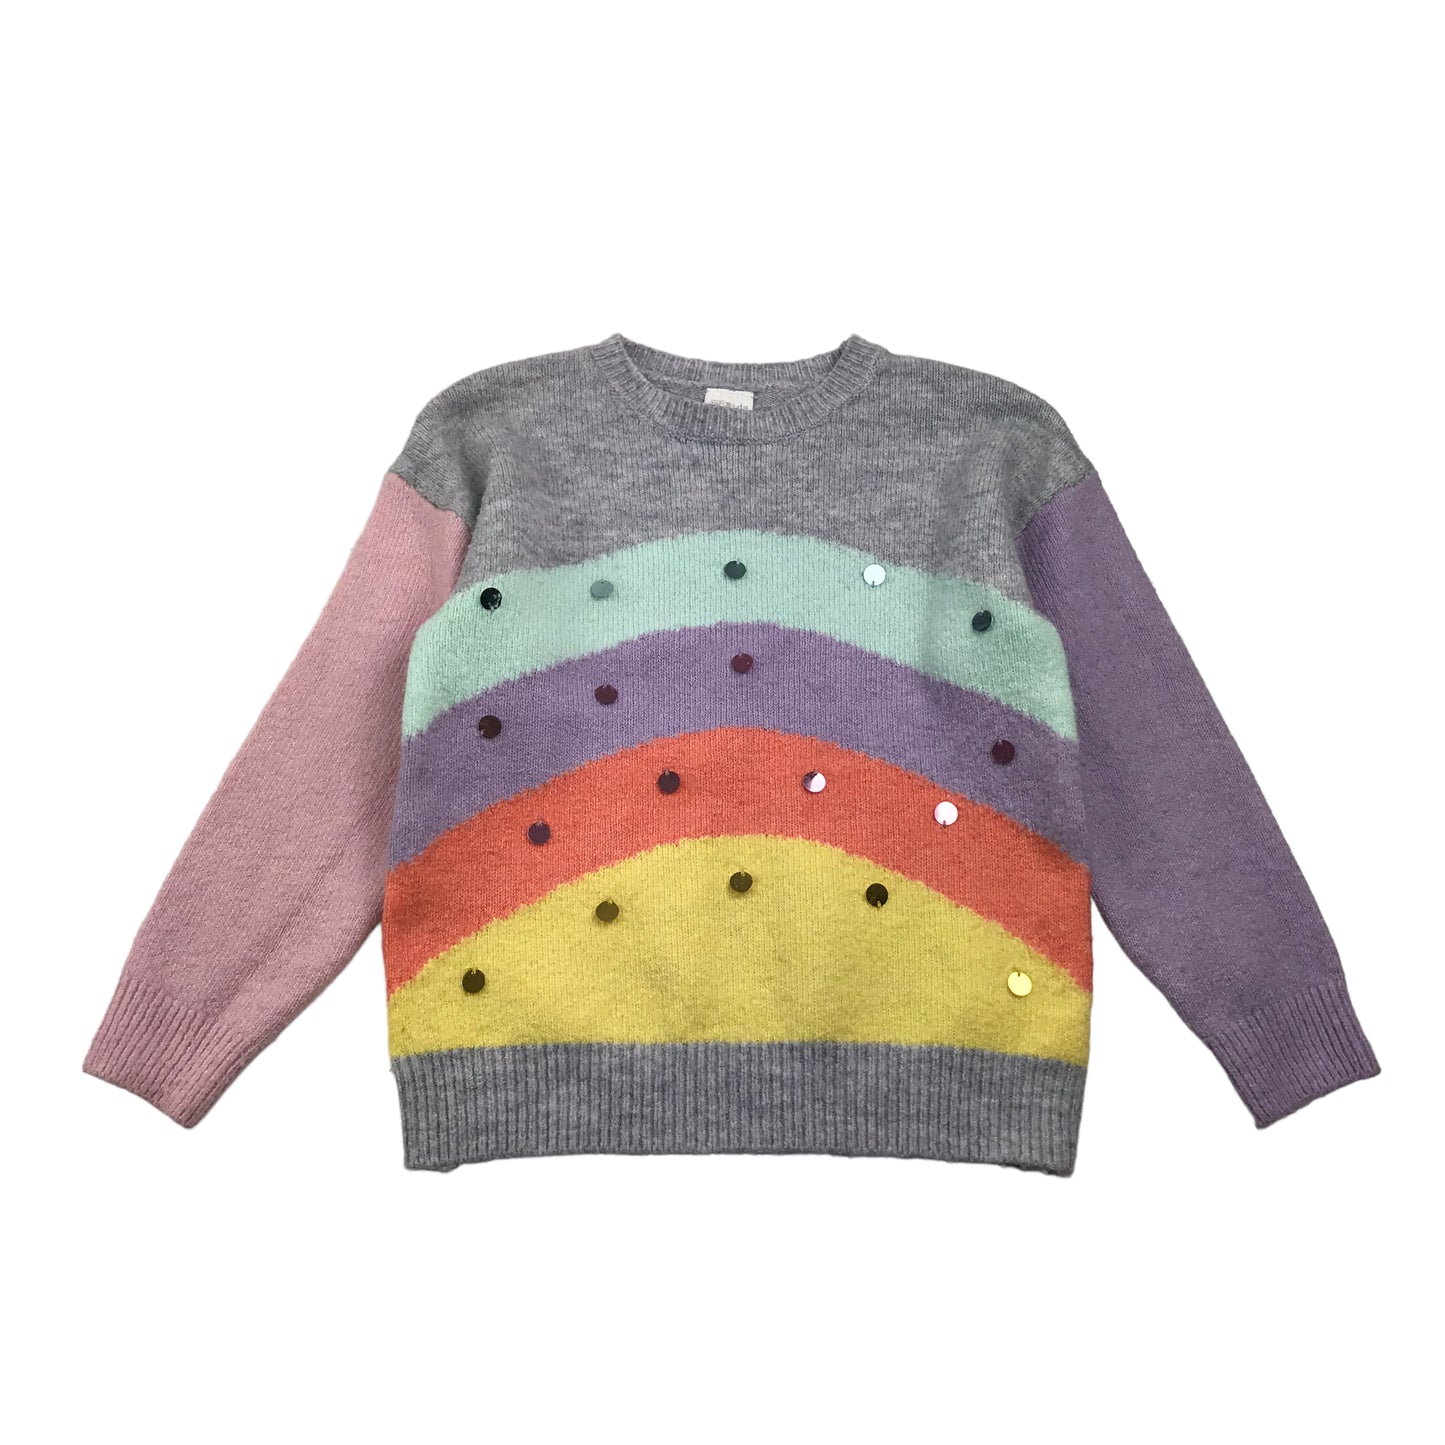 Casualwear Rainbow Bundle of Clothing Age 9